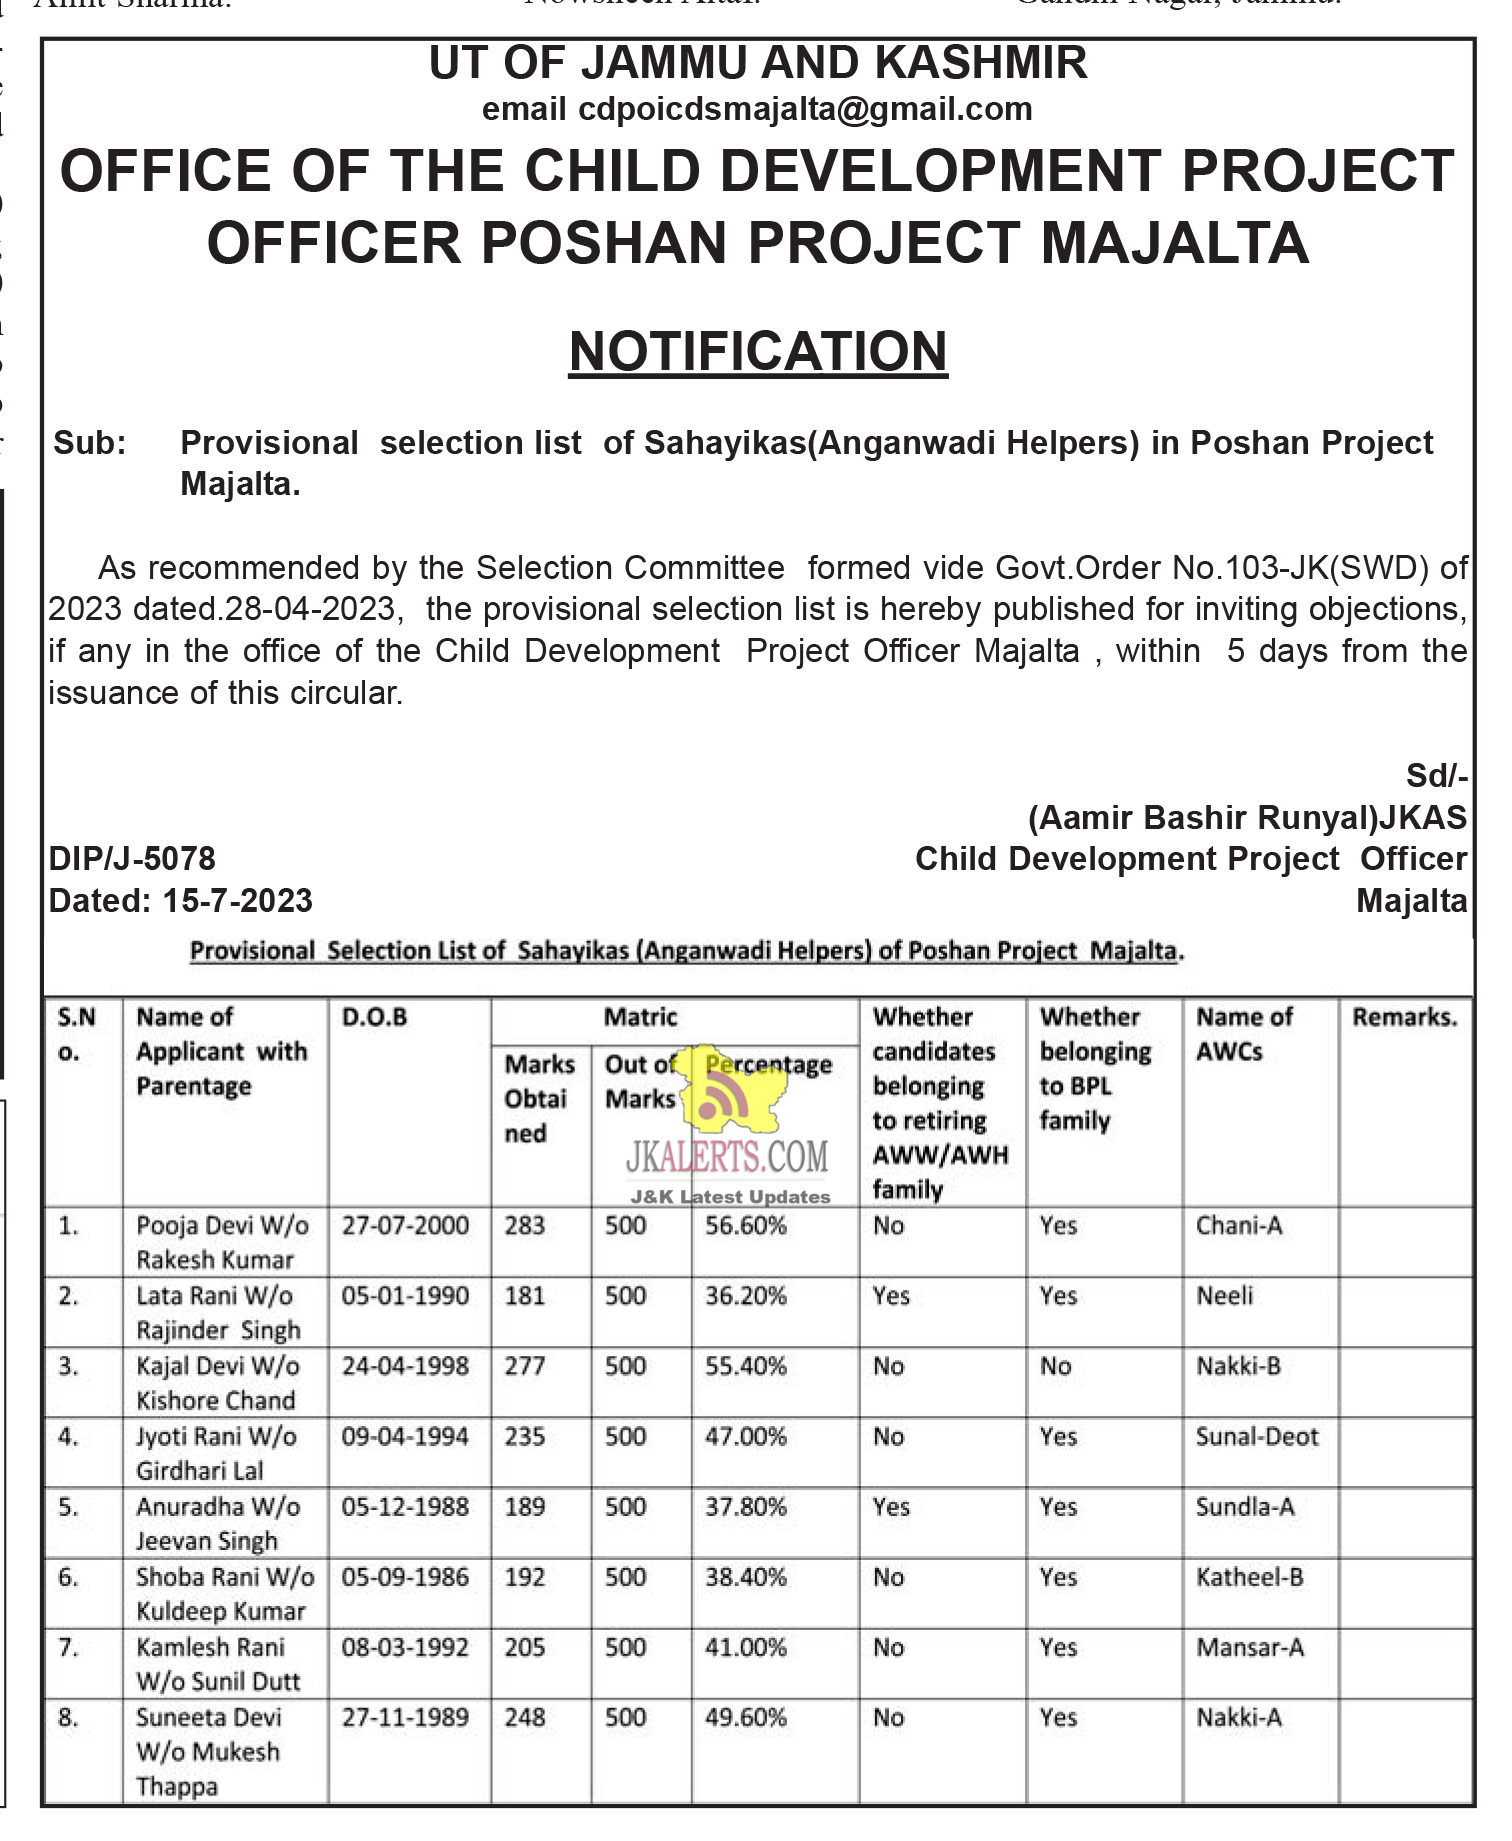 Provisional selection list of Sahayikas(Anganwadi Helpers)